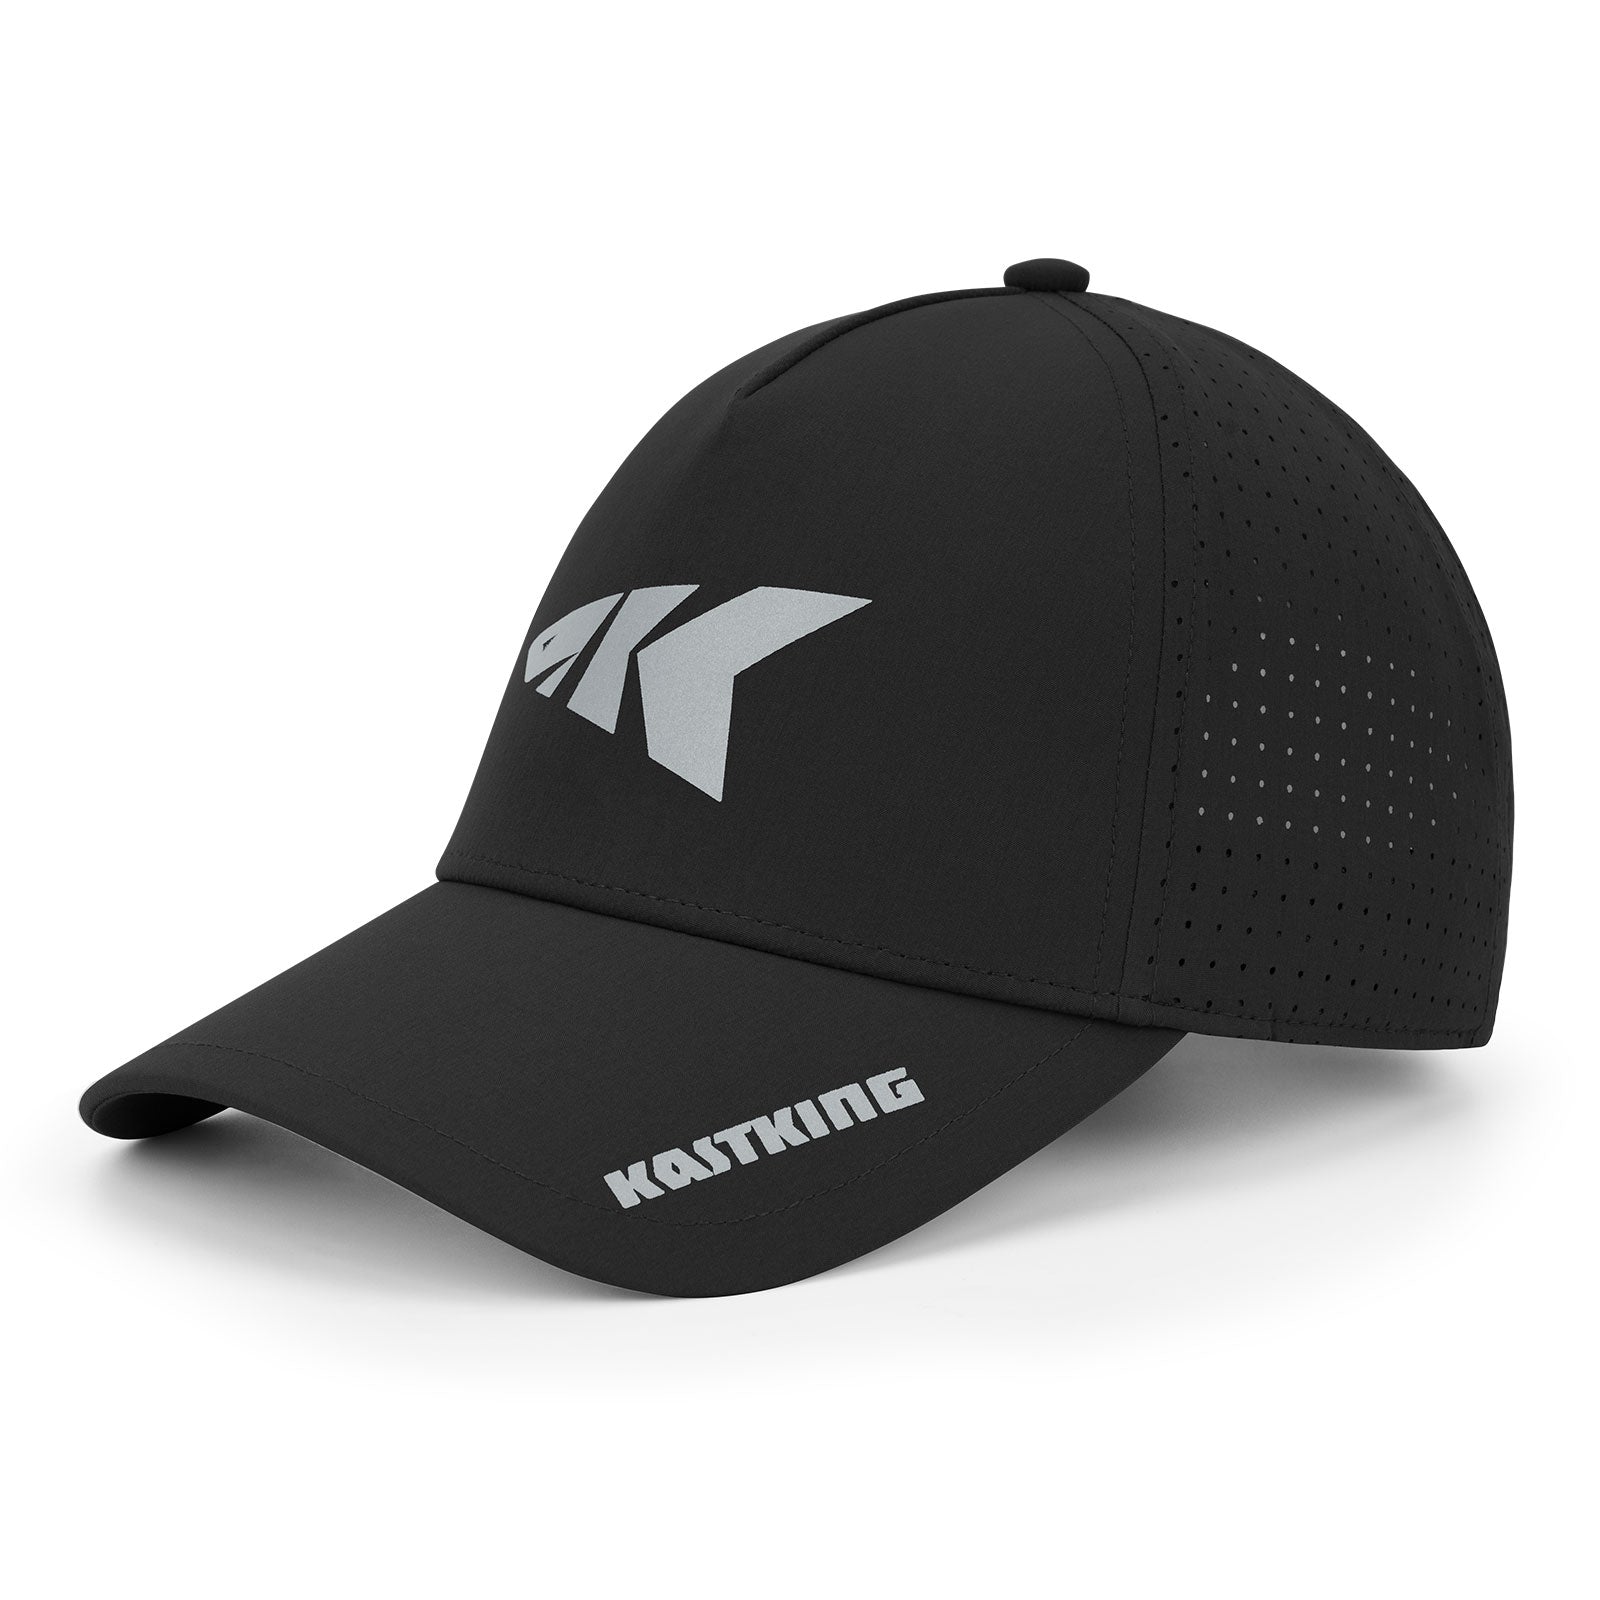 KastKing Official Caps - Adjustable / Black/Silver-A